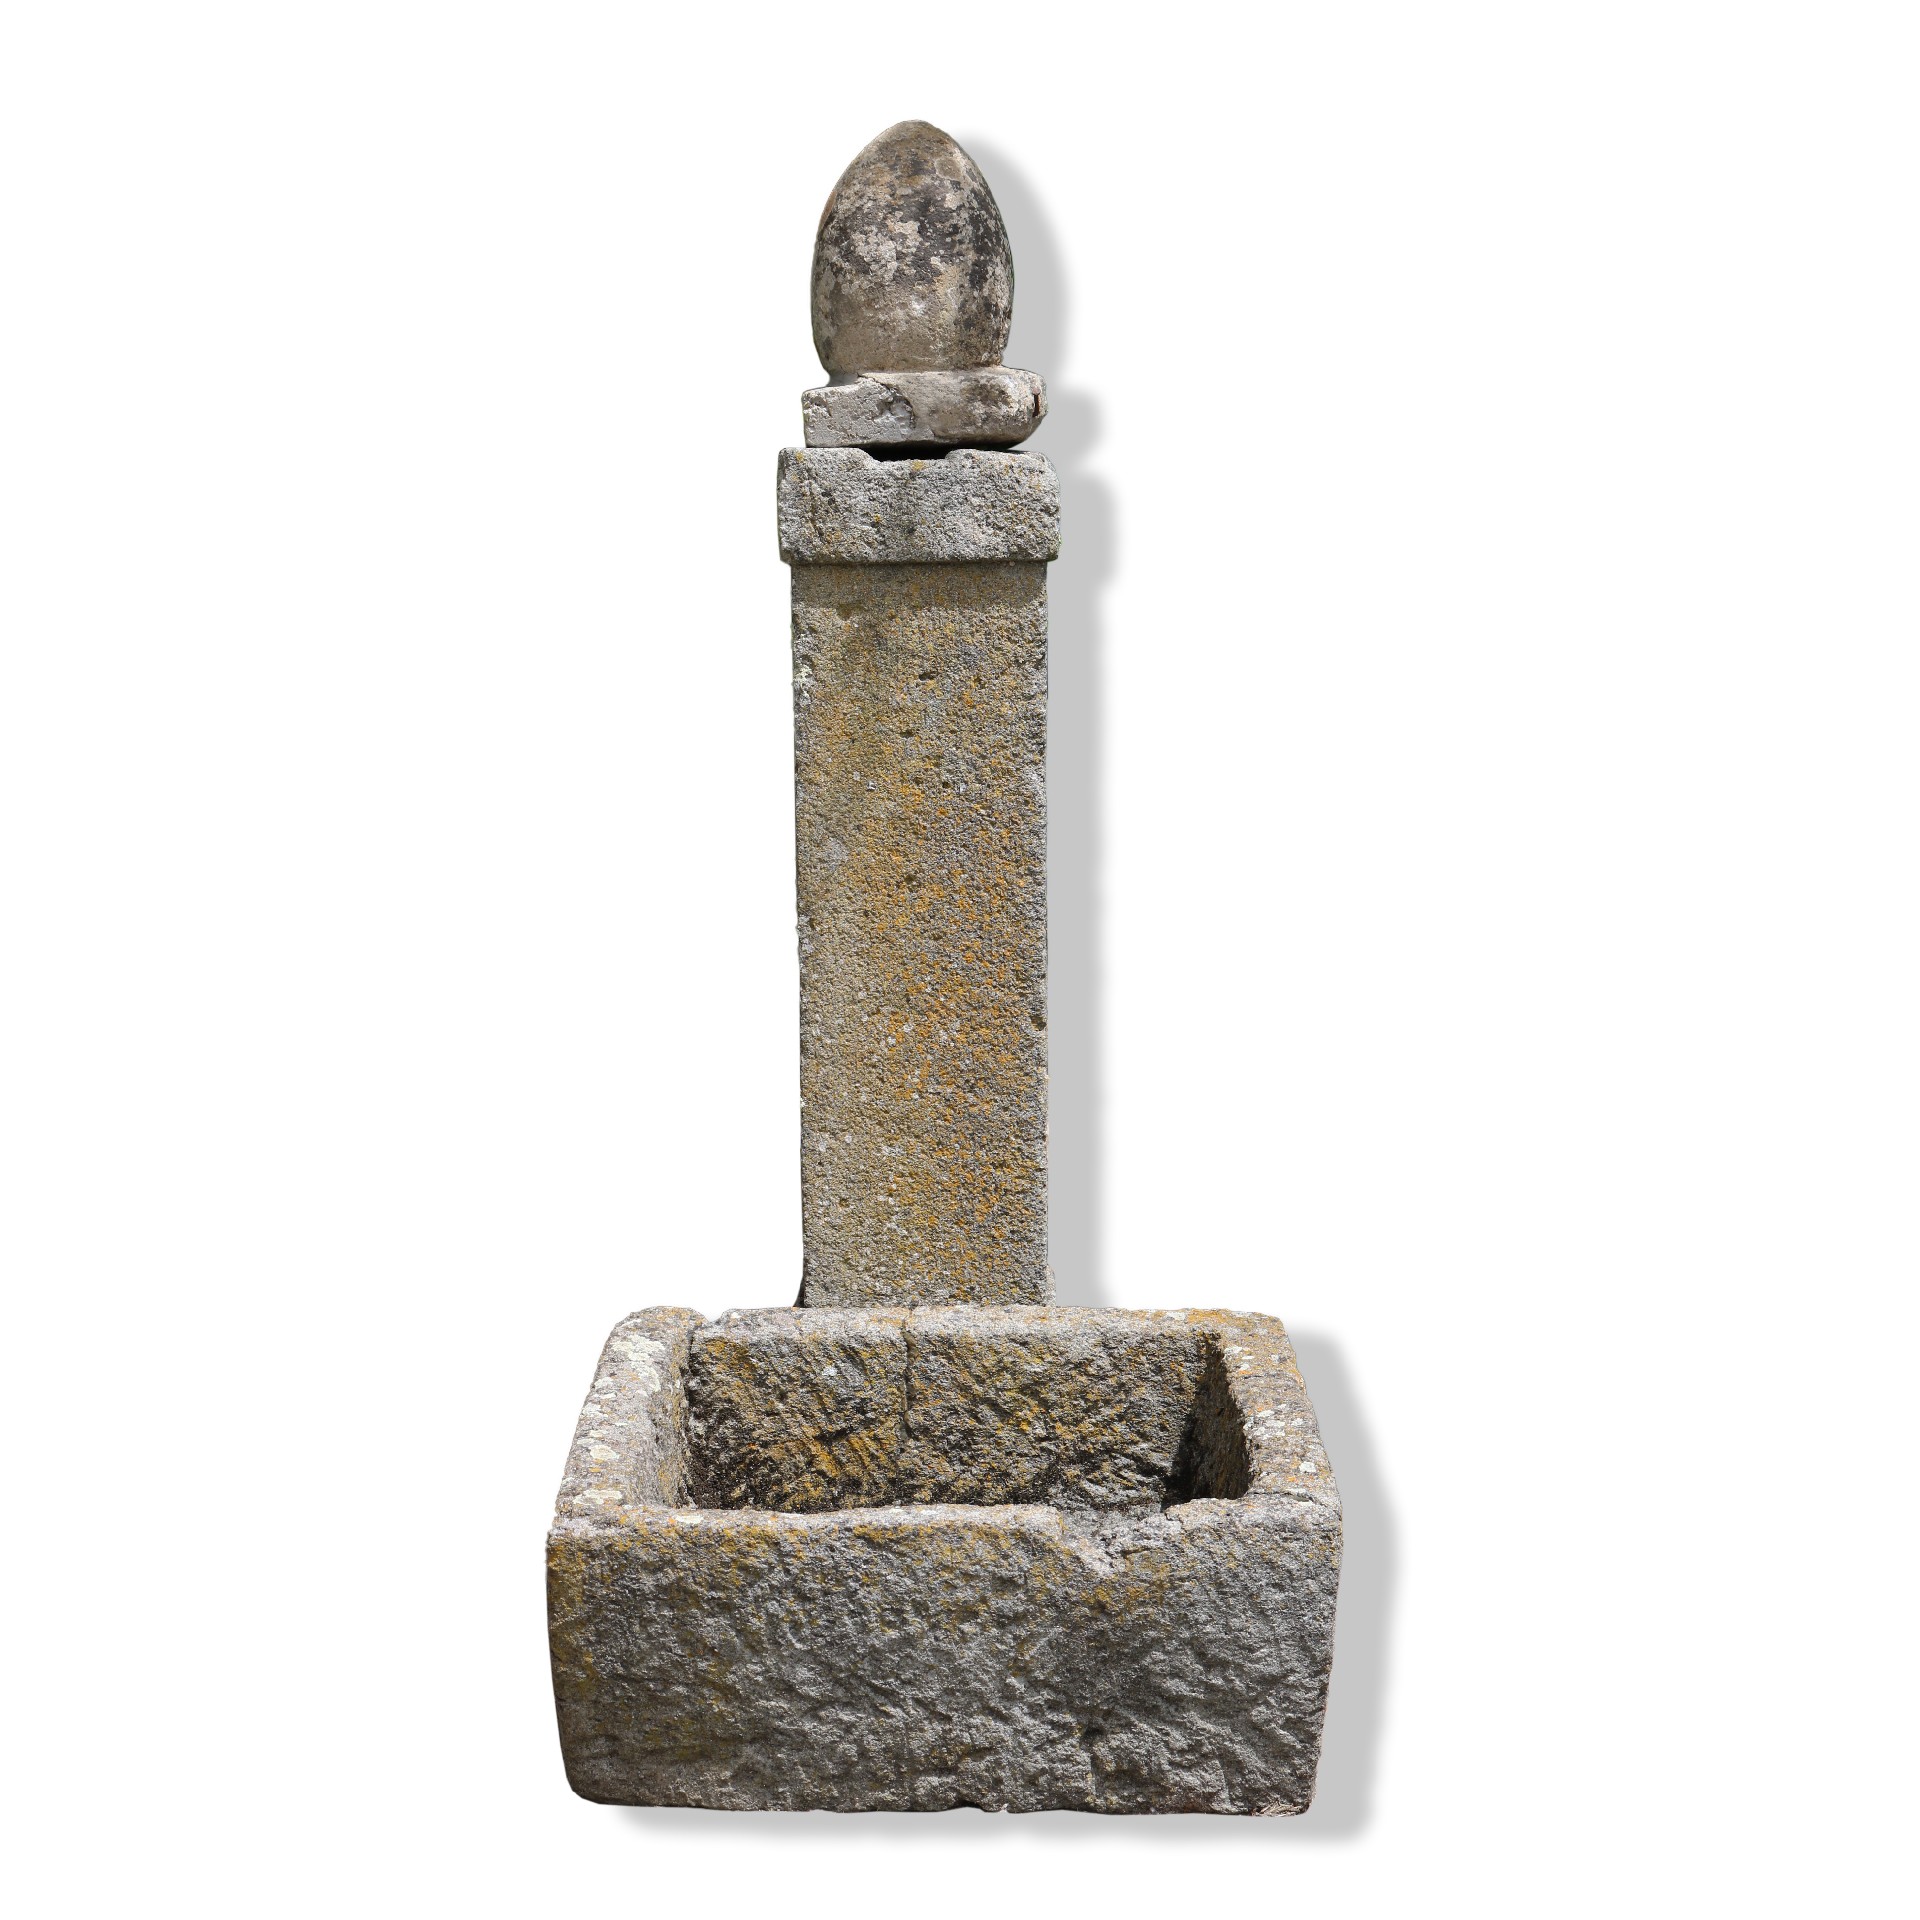 Antica fontana in pietra. - Fontane Antiche - Arredo Giardino - Prodotti - Antichità Fiorillo